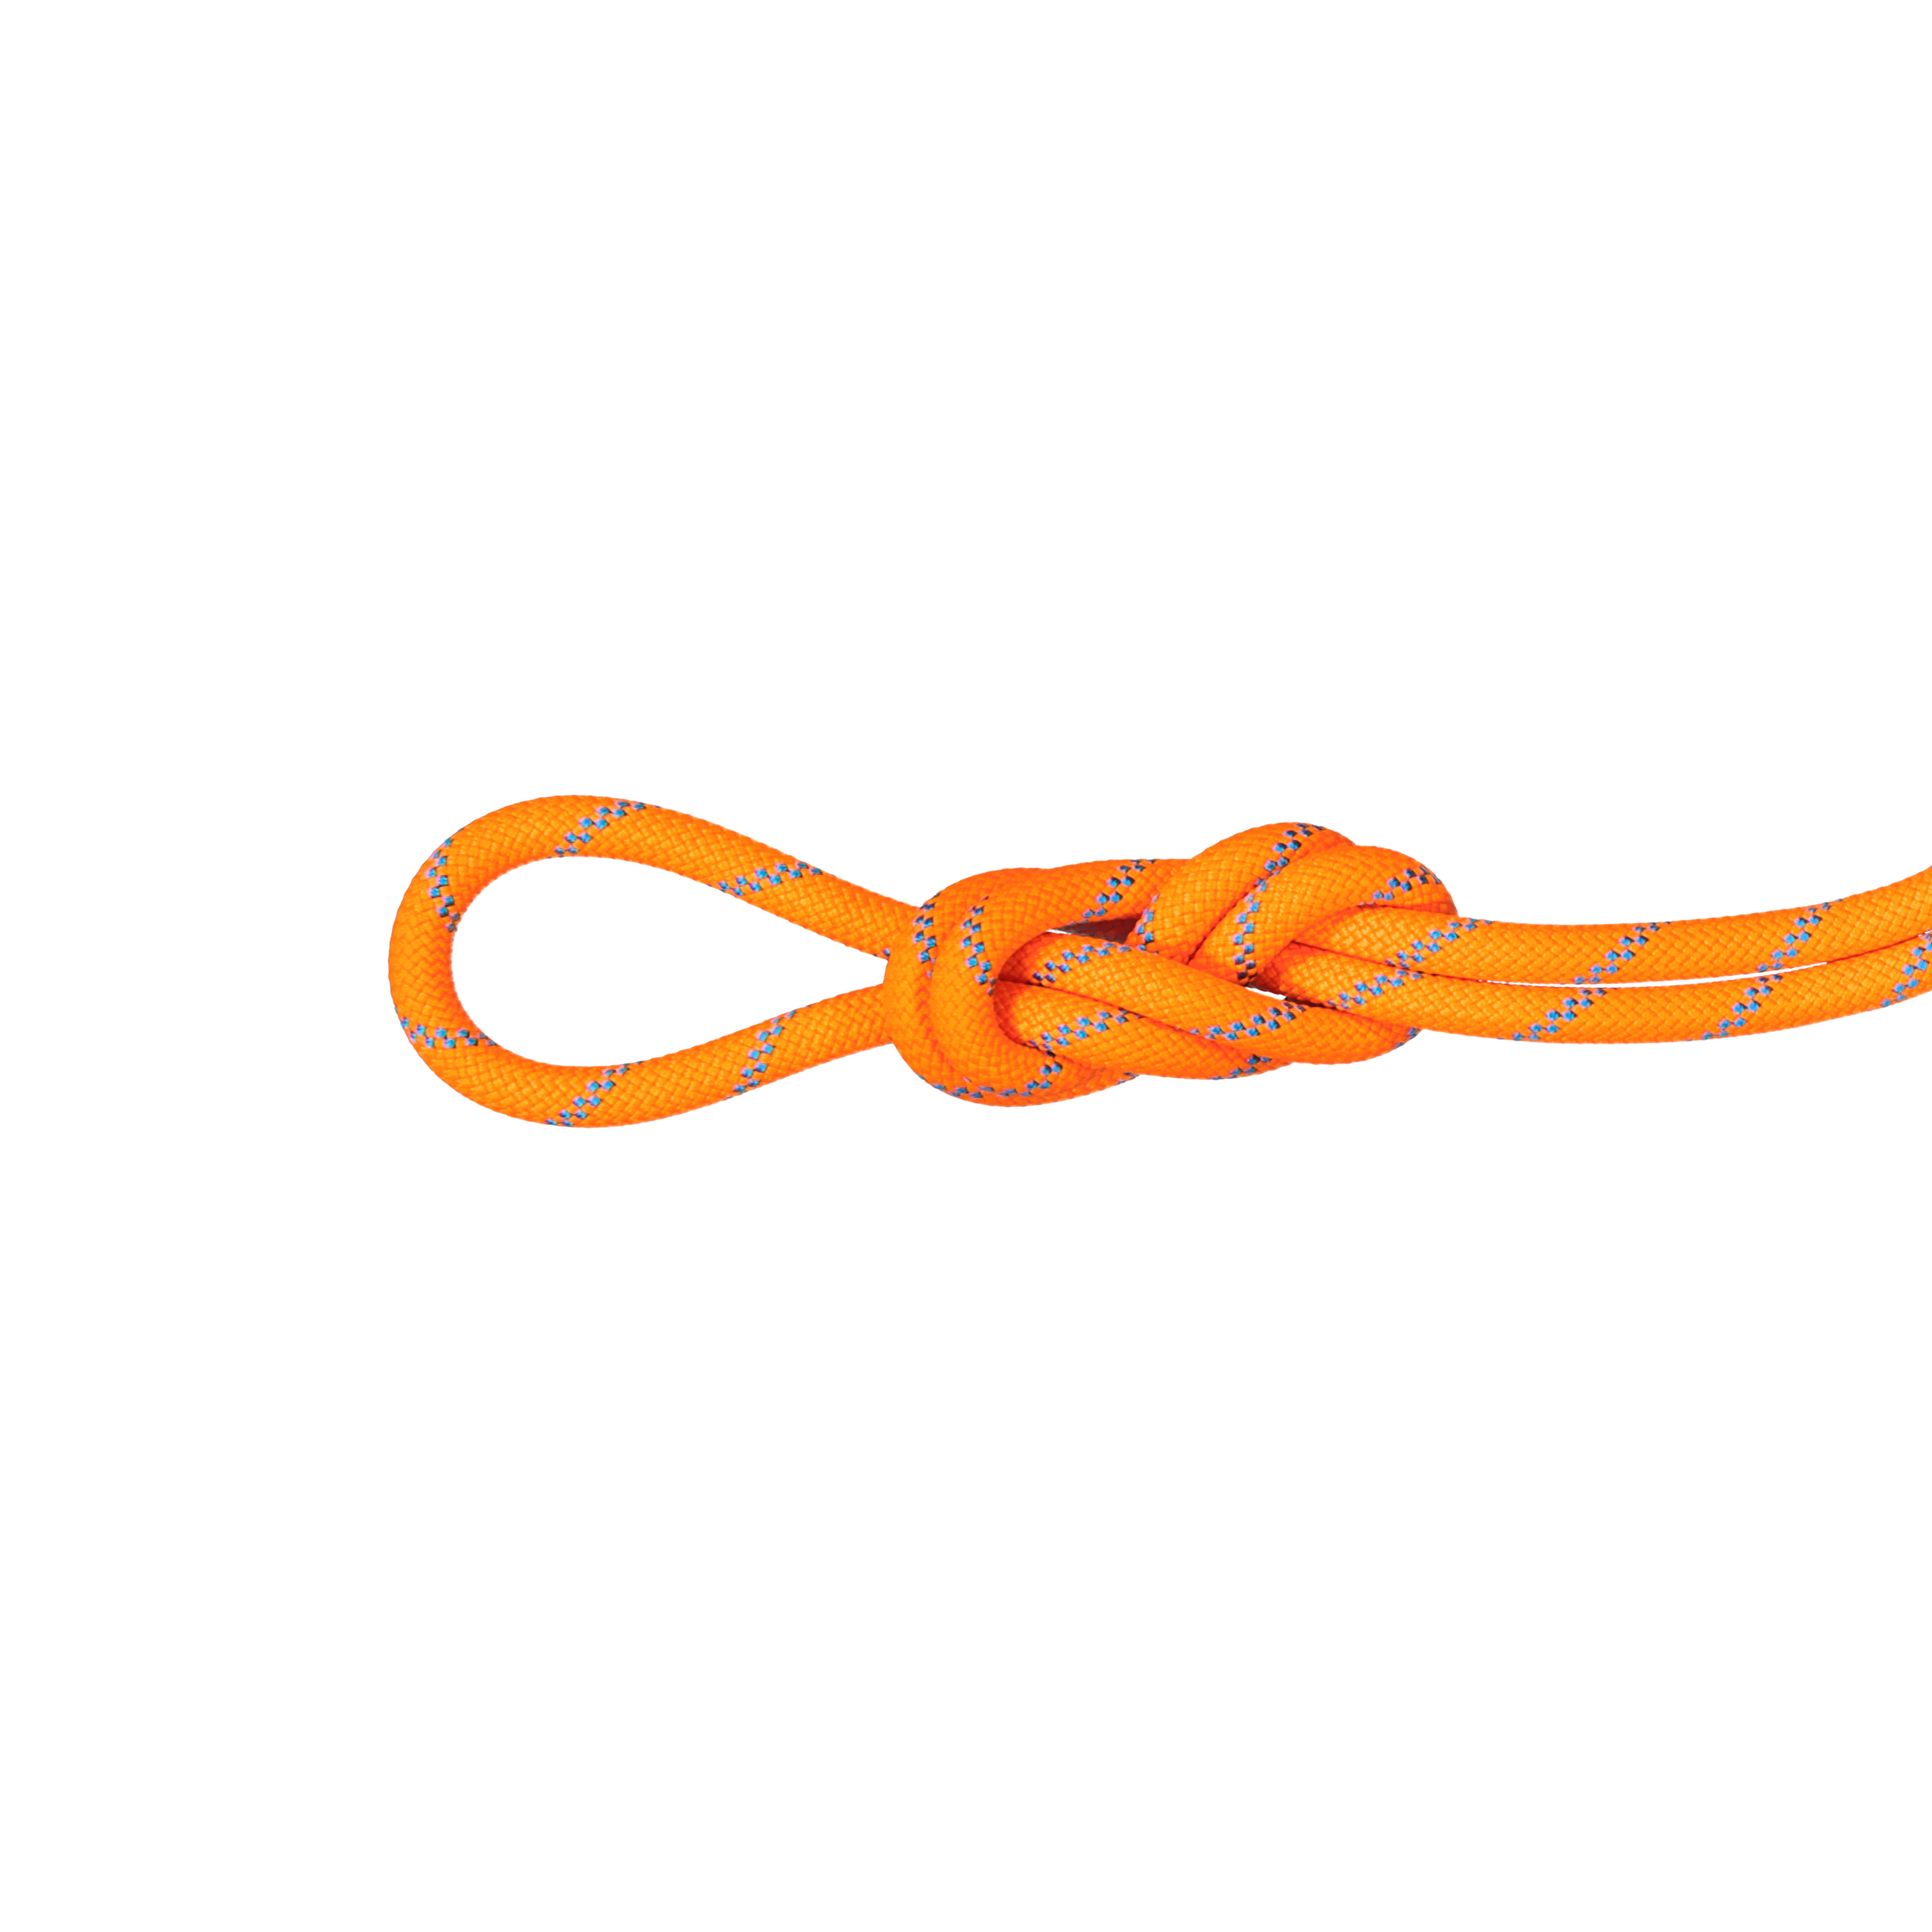 8.7 Alpine Sender Dry Rope - Dry Standard, vibrant orange-ocean thumbnail